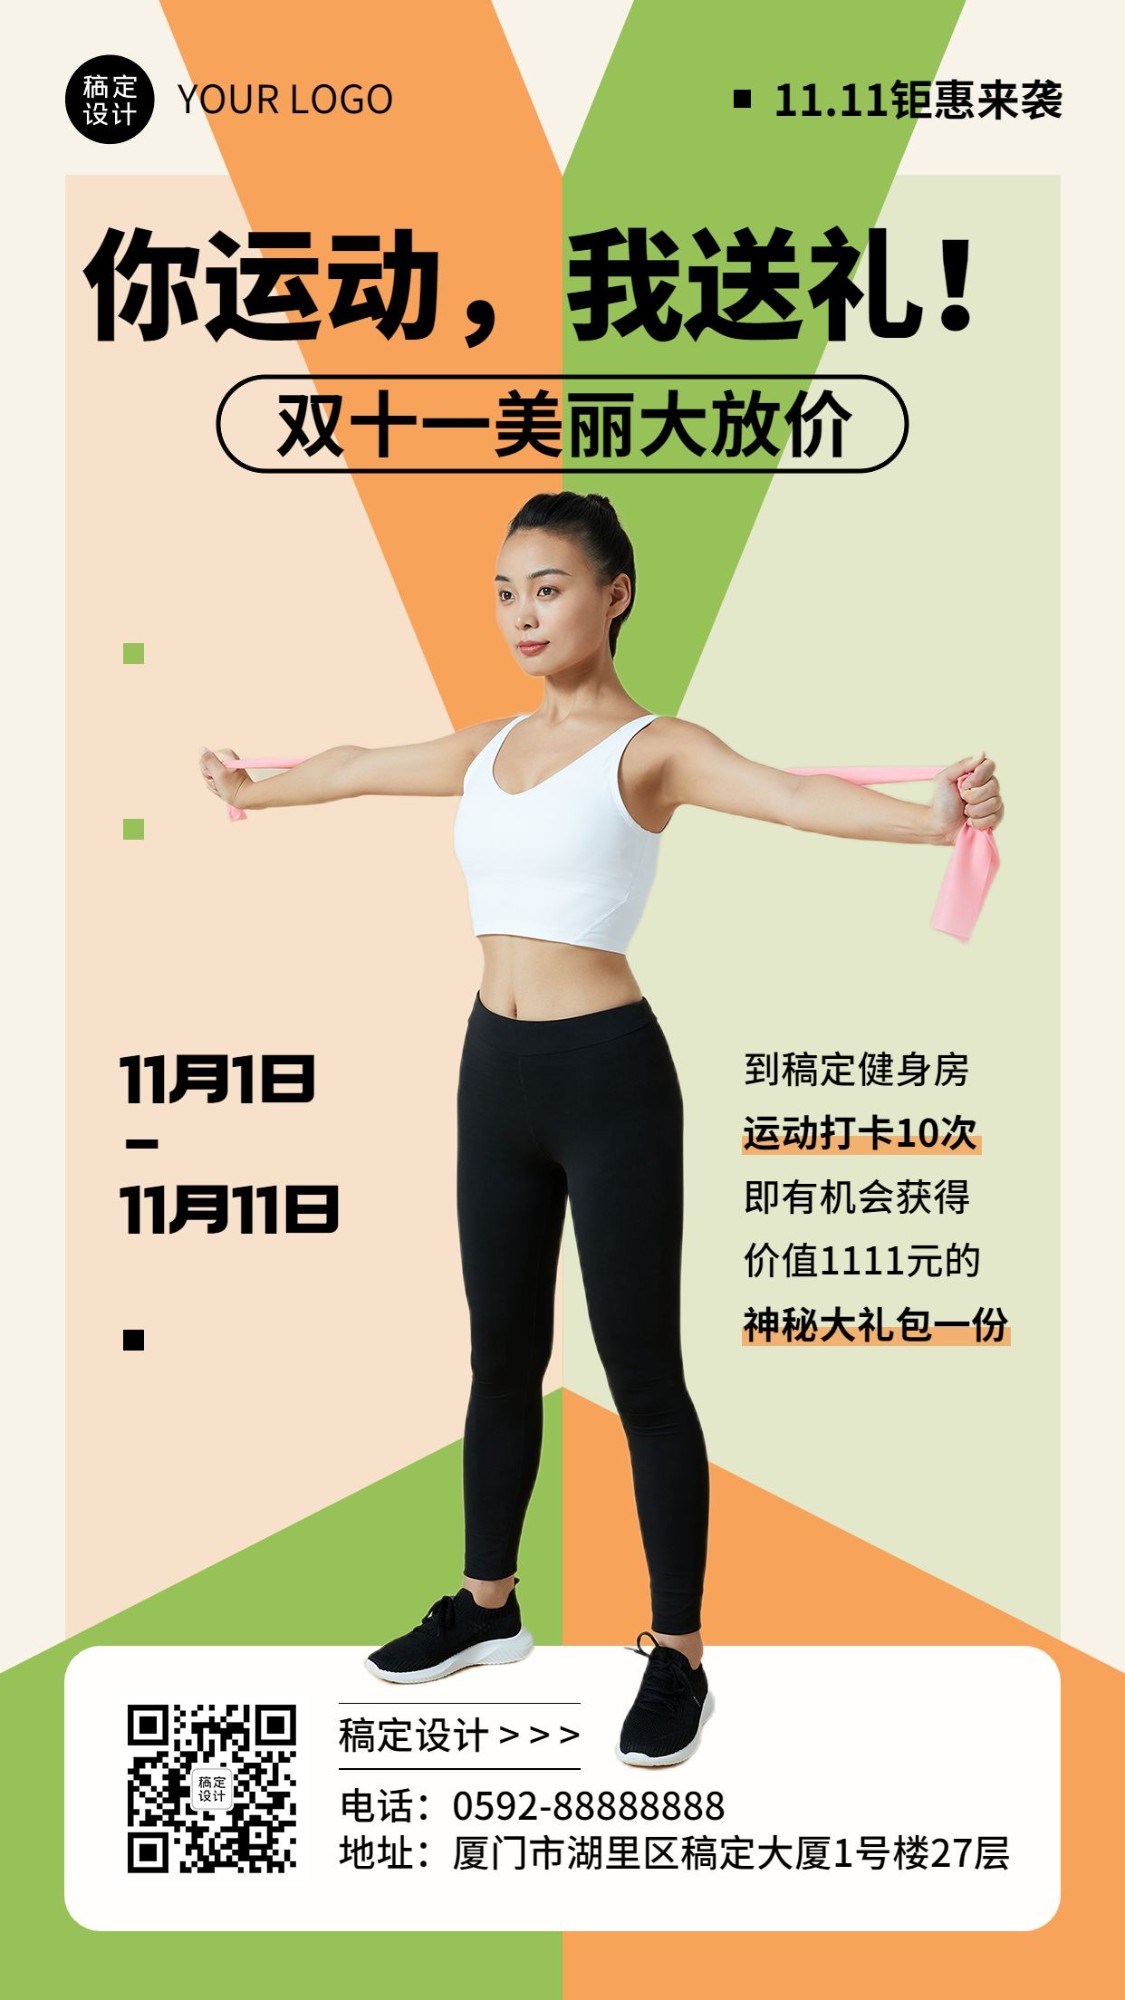 双十一运动健身课程促销活动营销手机海报